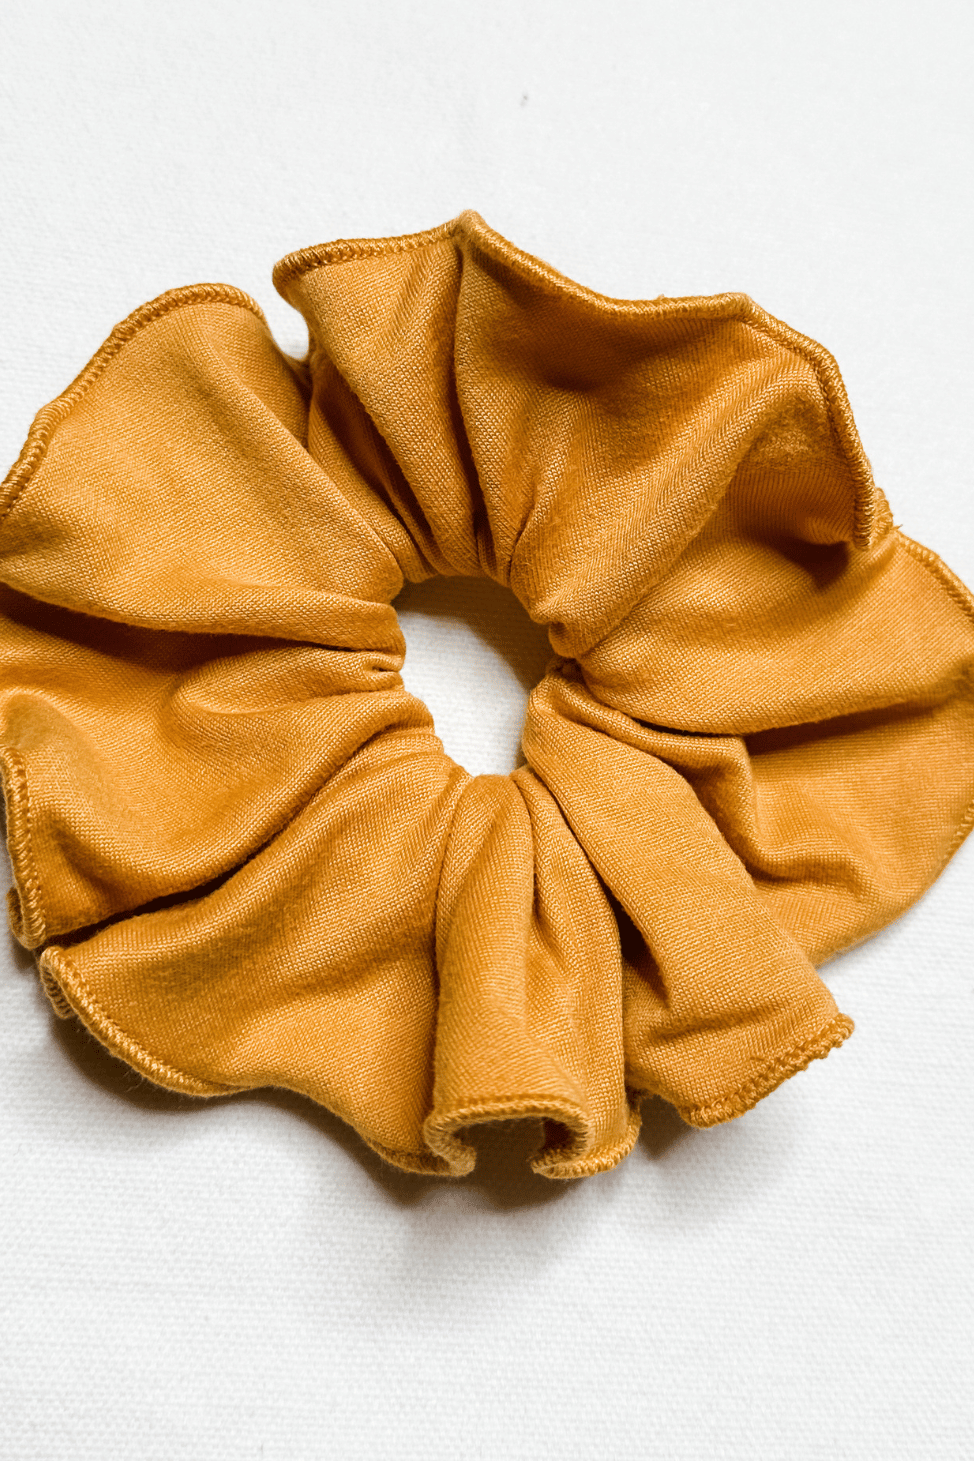 Scrunchie in Mustard color from Diane Kroe